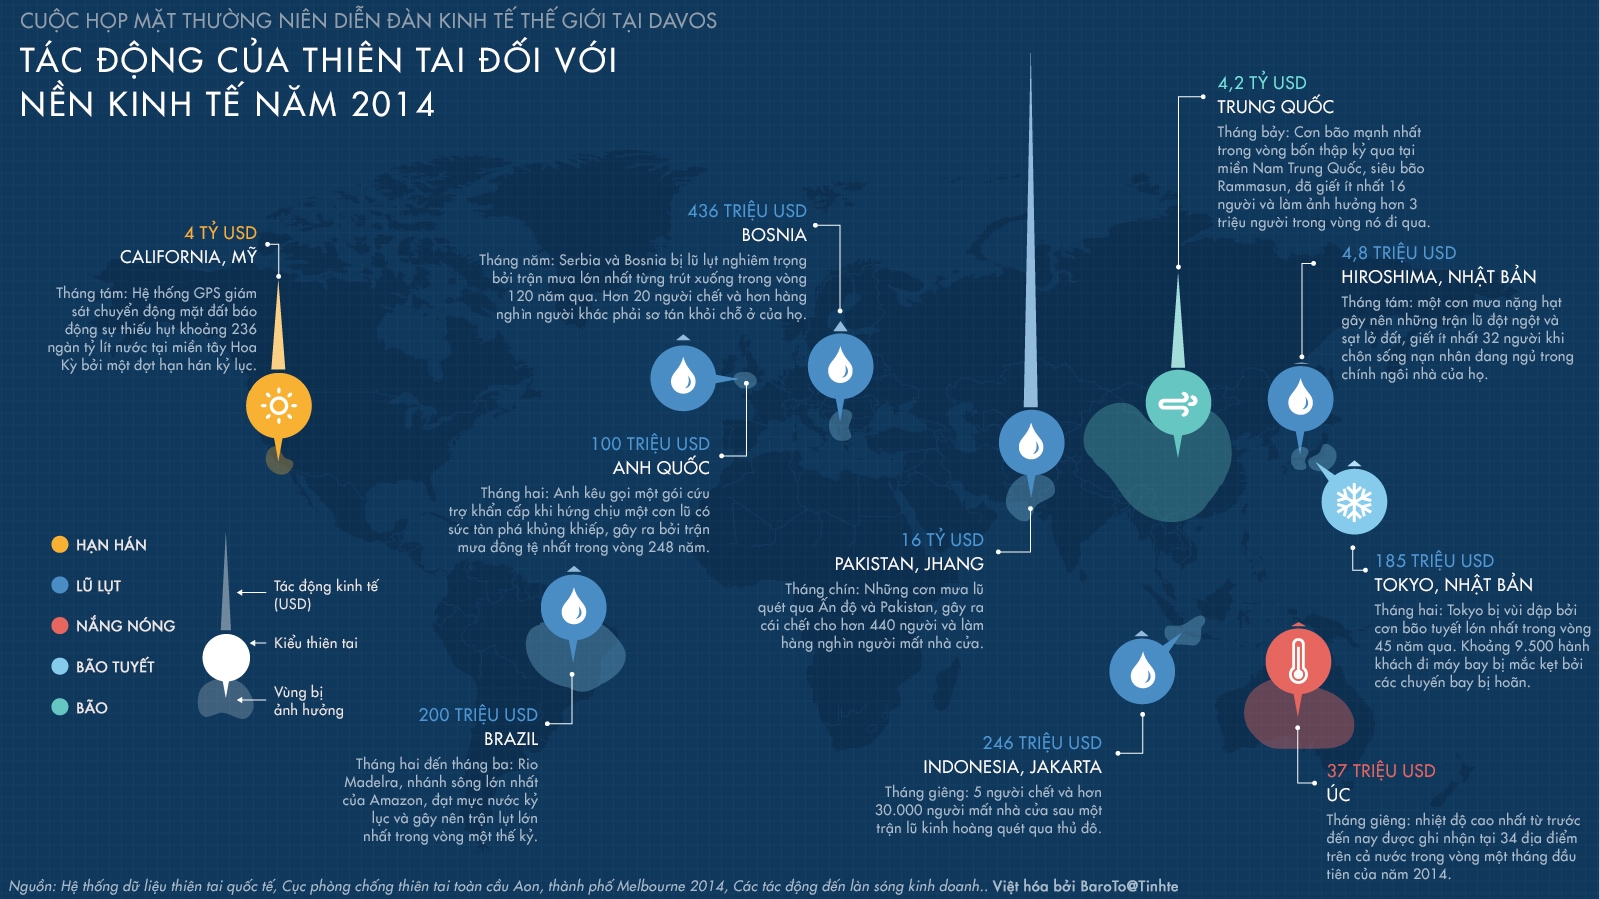 [Infographic] Tác động của thiên tai đối với nền kinh tế thế giới năm 2014